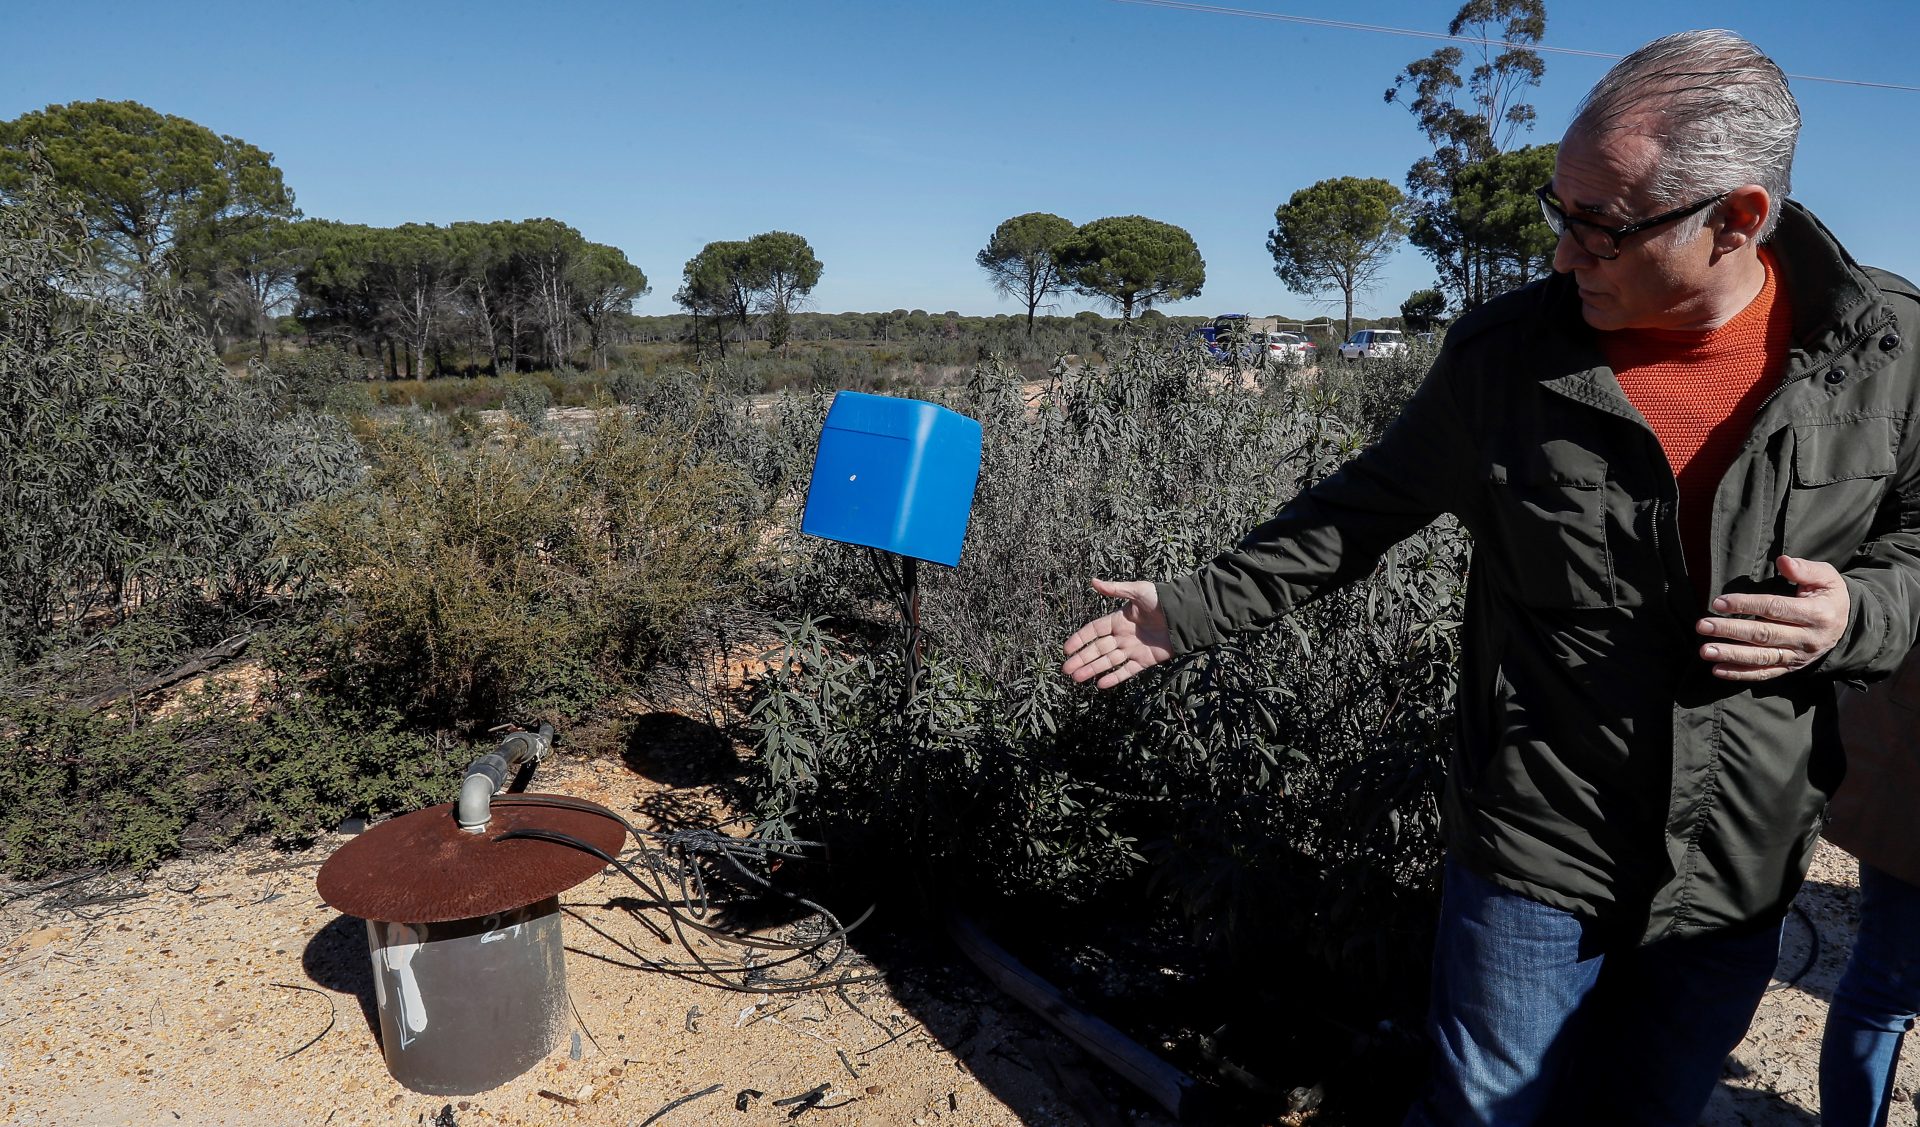 La CHG prevé clausurar en dos meses 77 pozos ilegales en el entorno de Doñana